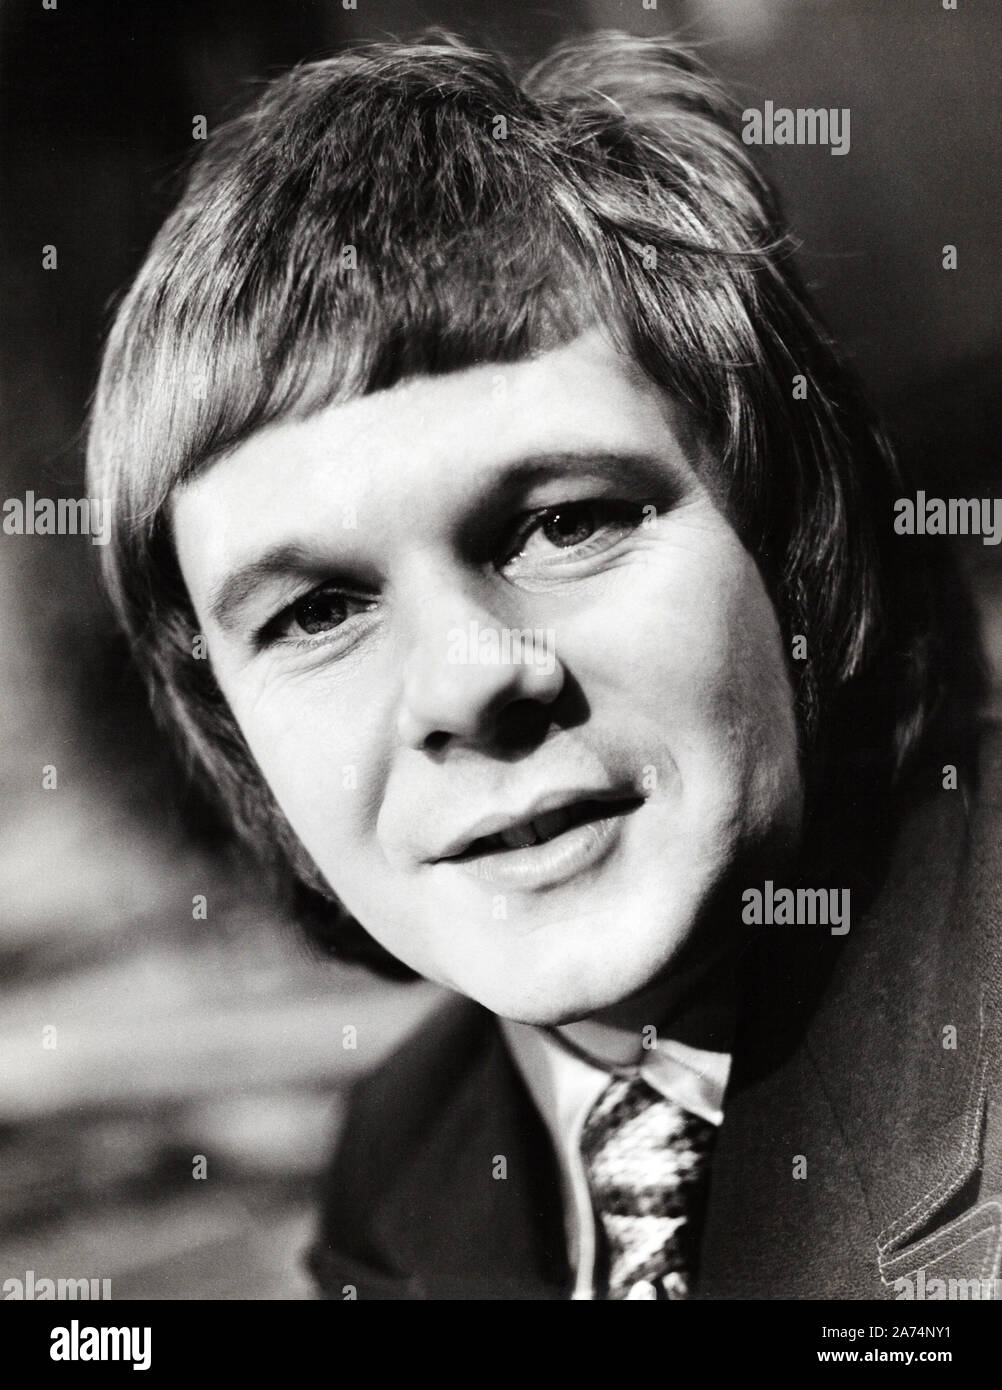 Graham Bonney, britischer Entertainer und Schlagersänger, Deutschland ca. 1975. British schlager singer and entertainer Graham Bonney, Germany ca. 1975. Stock Photo